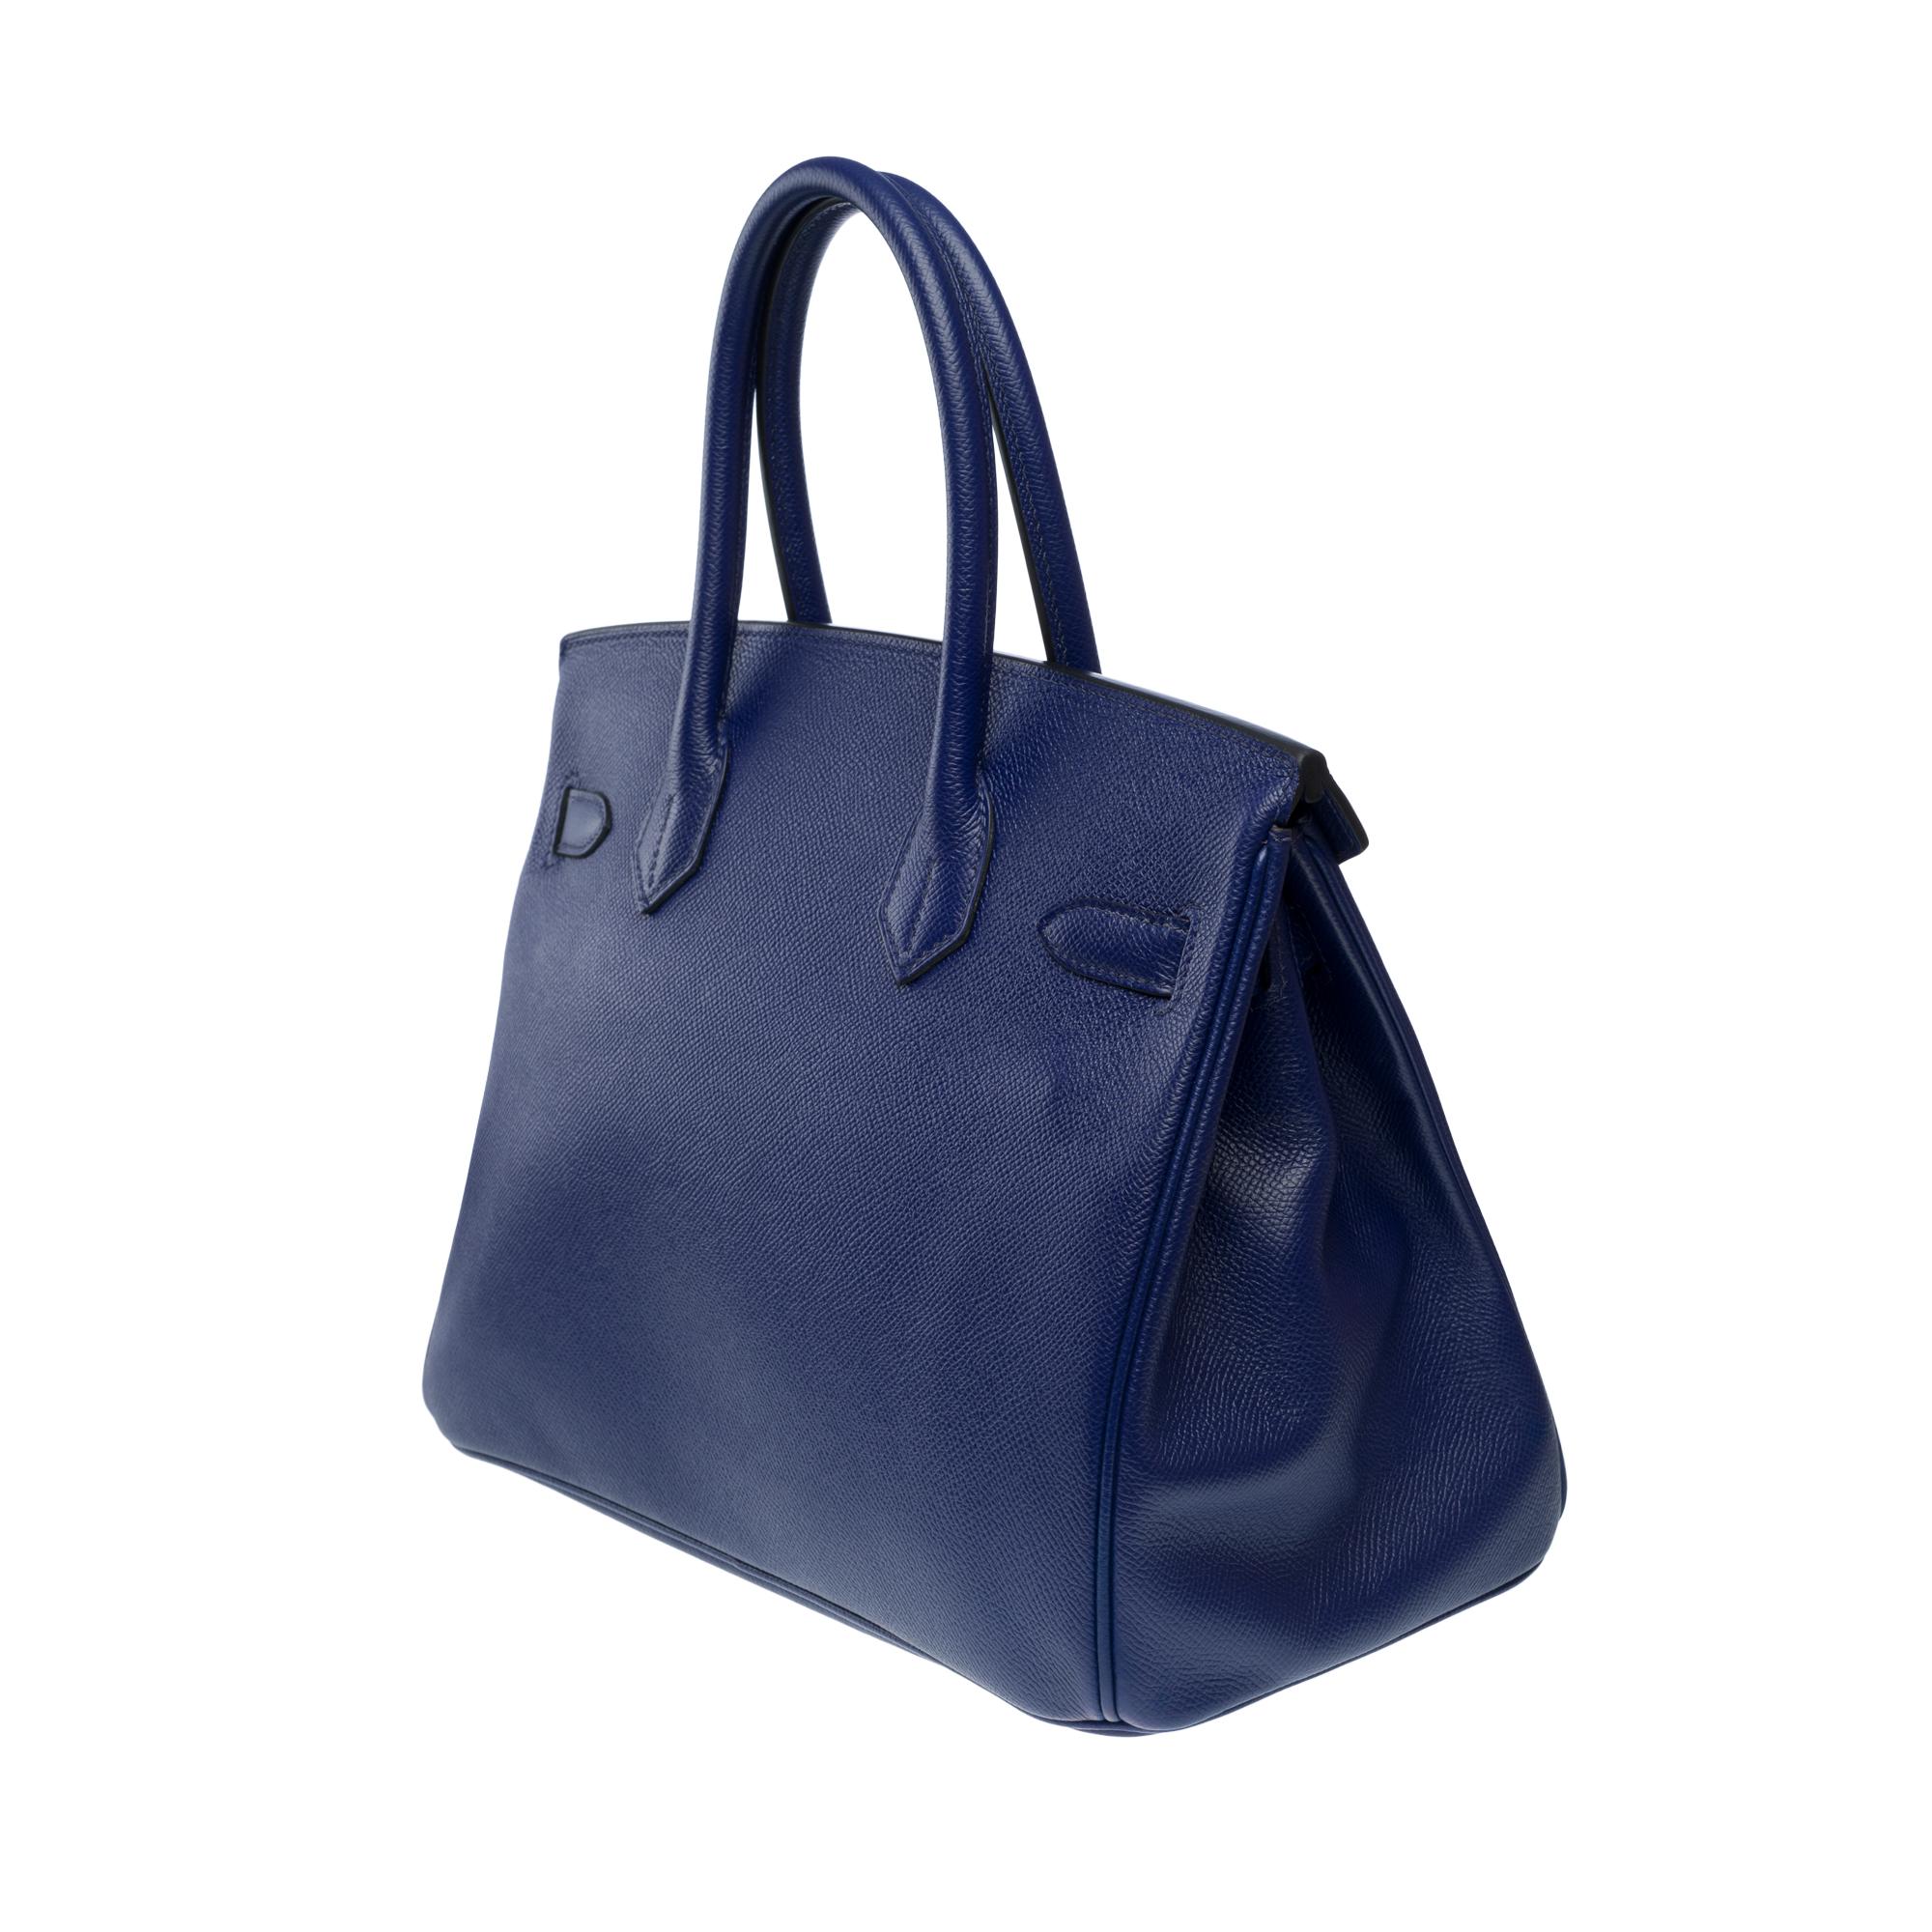 Stunning Hermes Birkin 30 handbag in Blue Sapphire Epsom leather, SHW For Sale 1